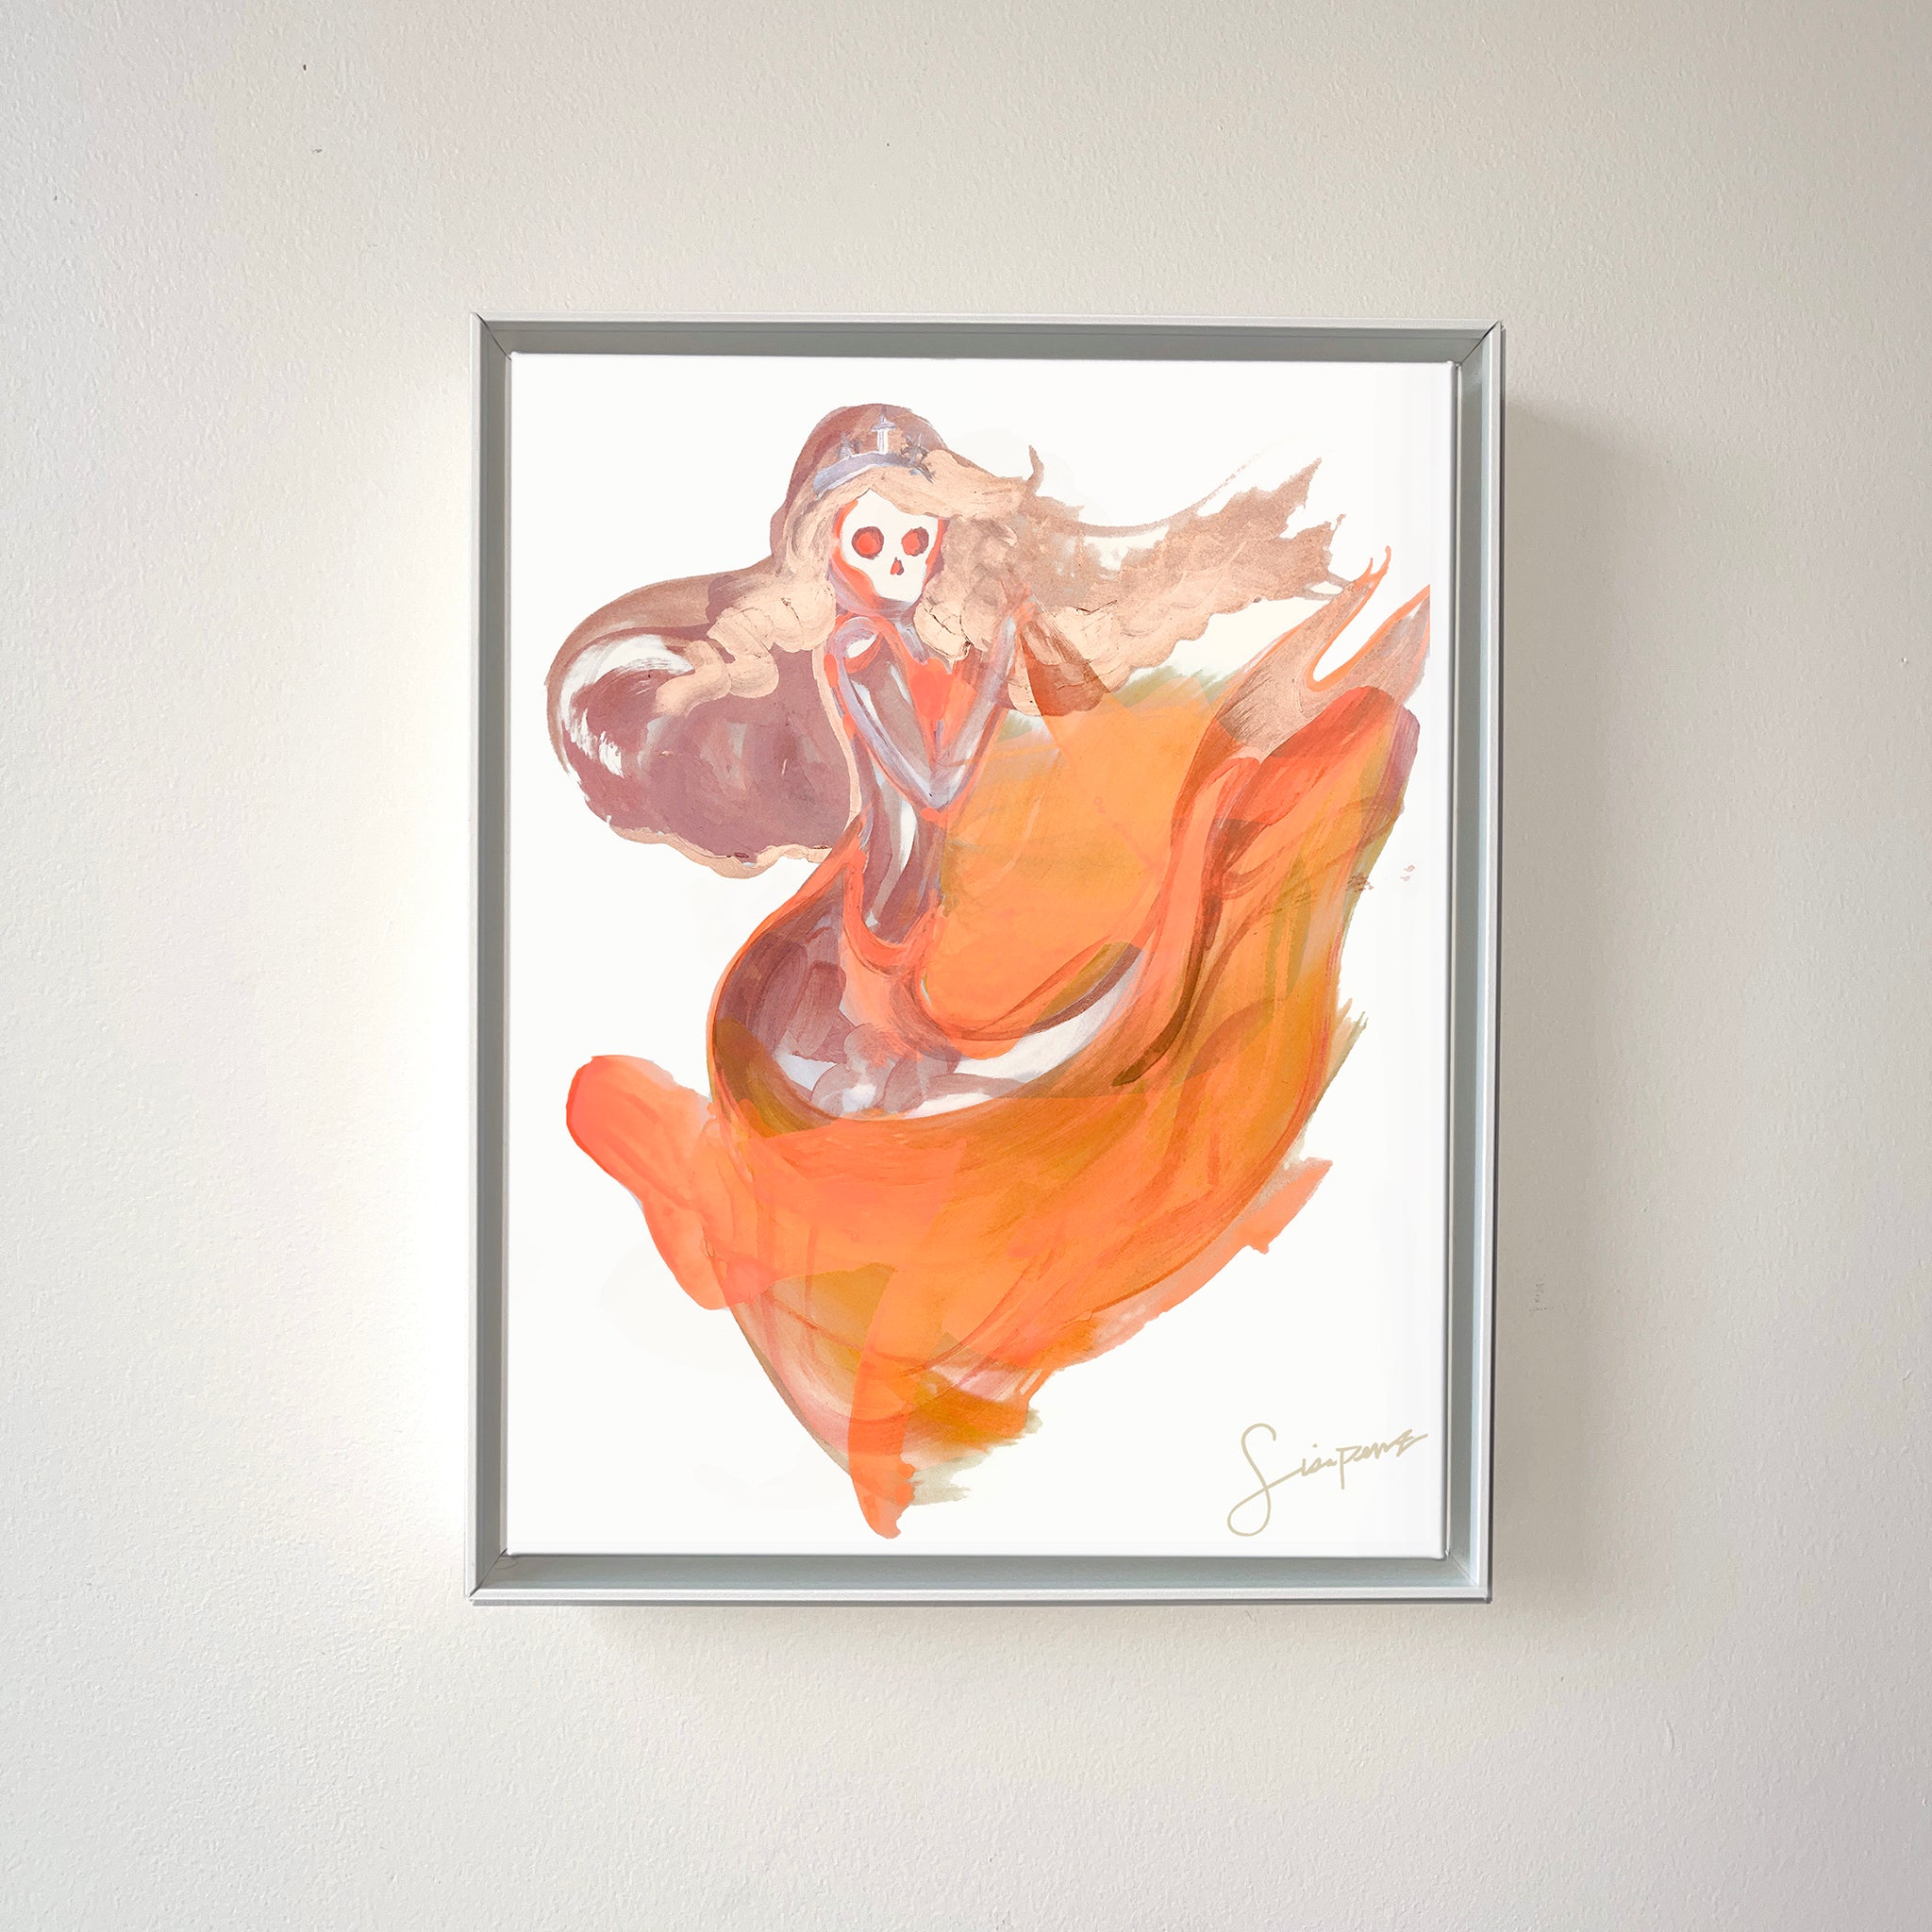 Skeleton mermaid painting framed in warm tone peach